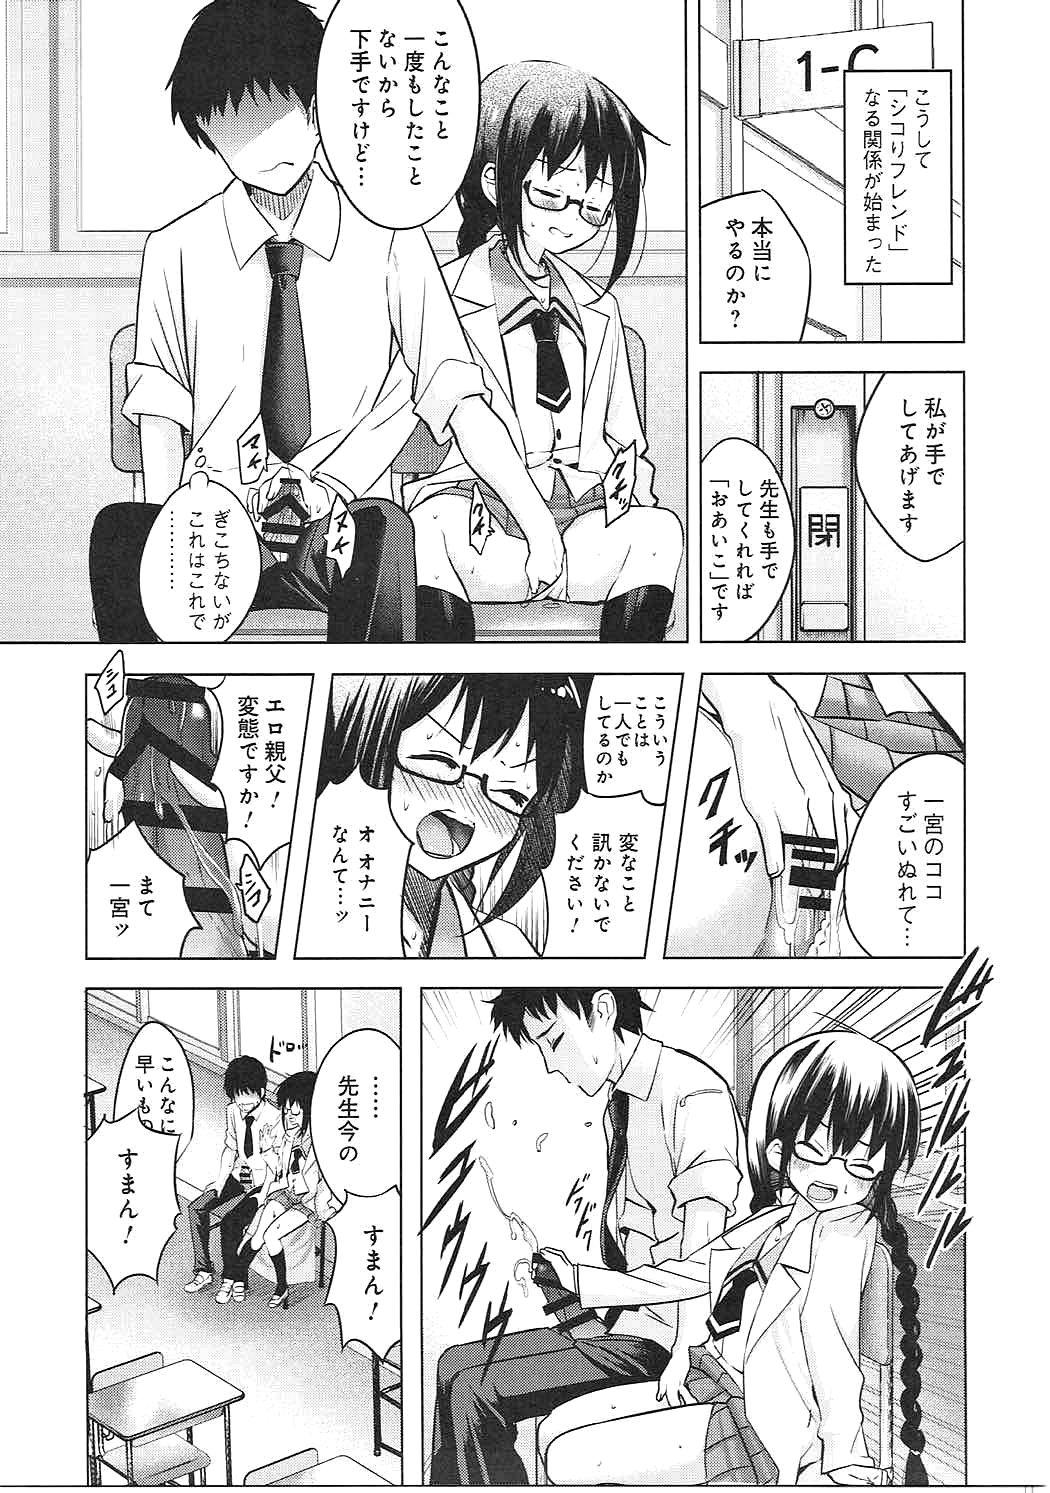 Teen Hardcore Watashi wa Sensei no Shikotomo desu! - Omaera zenin mendokusai Monster Dick - Page 8